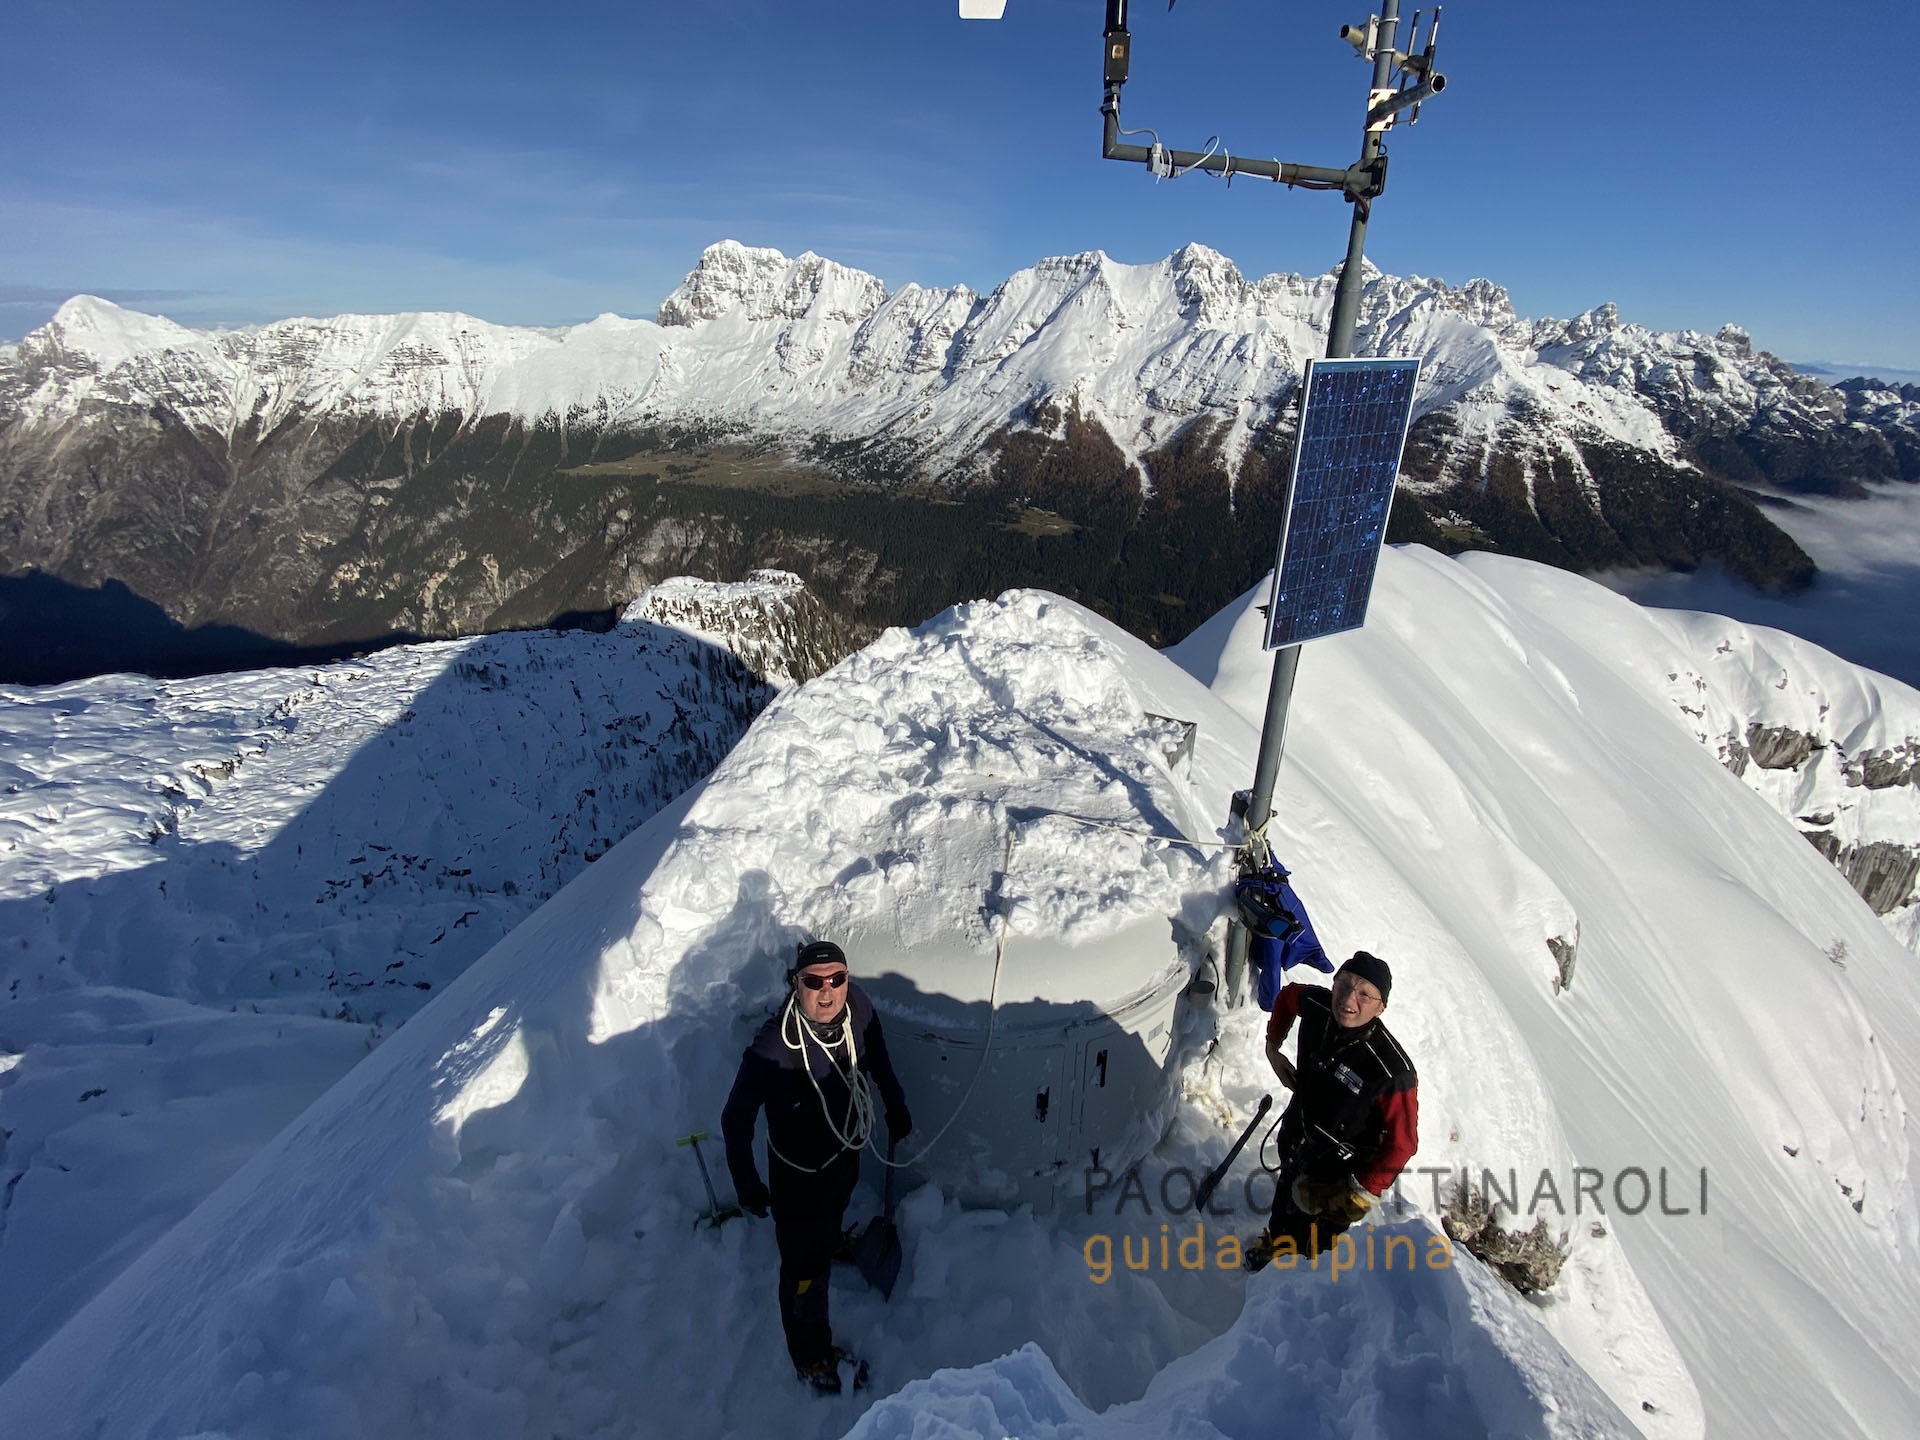 IMG_0005-collaborazioni_paolo pettinaroli guida alpina